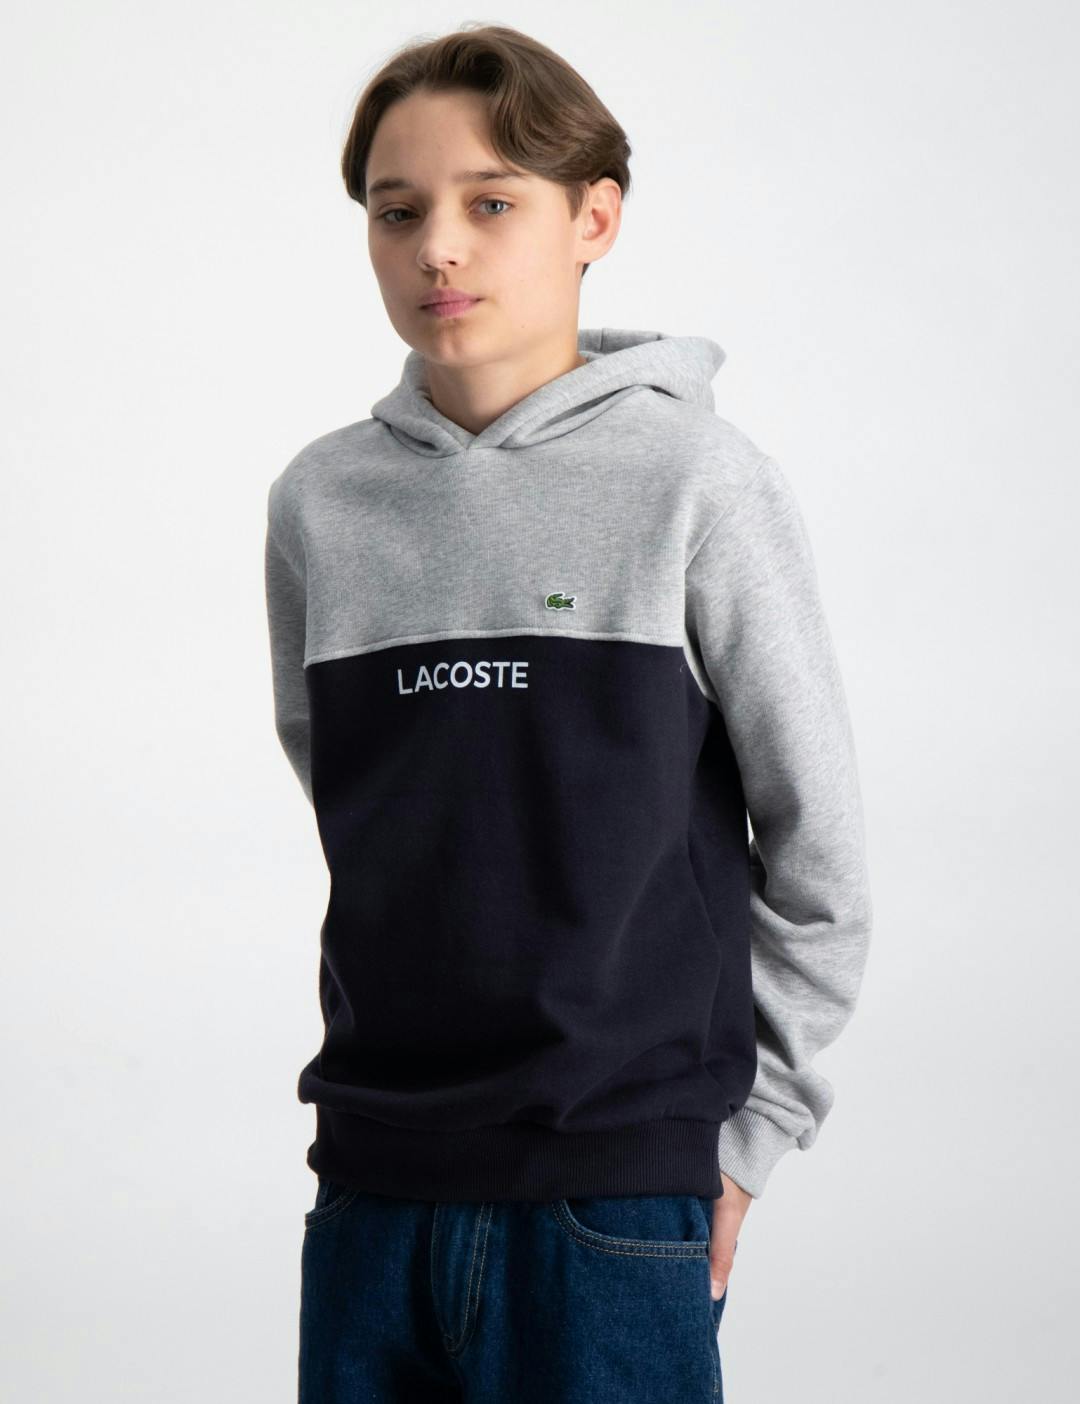 Lacoste Hoodies & tøj til børn og unge | Kidsbrandstore.dk